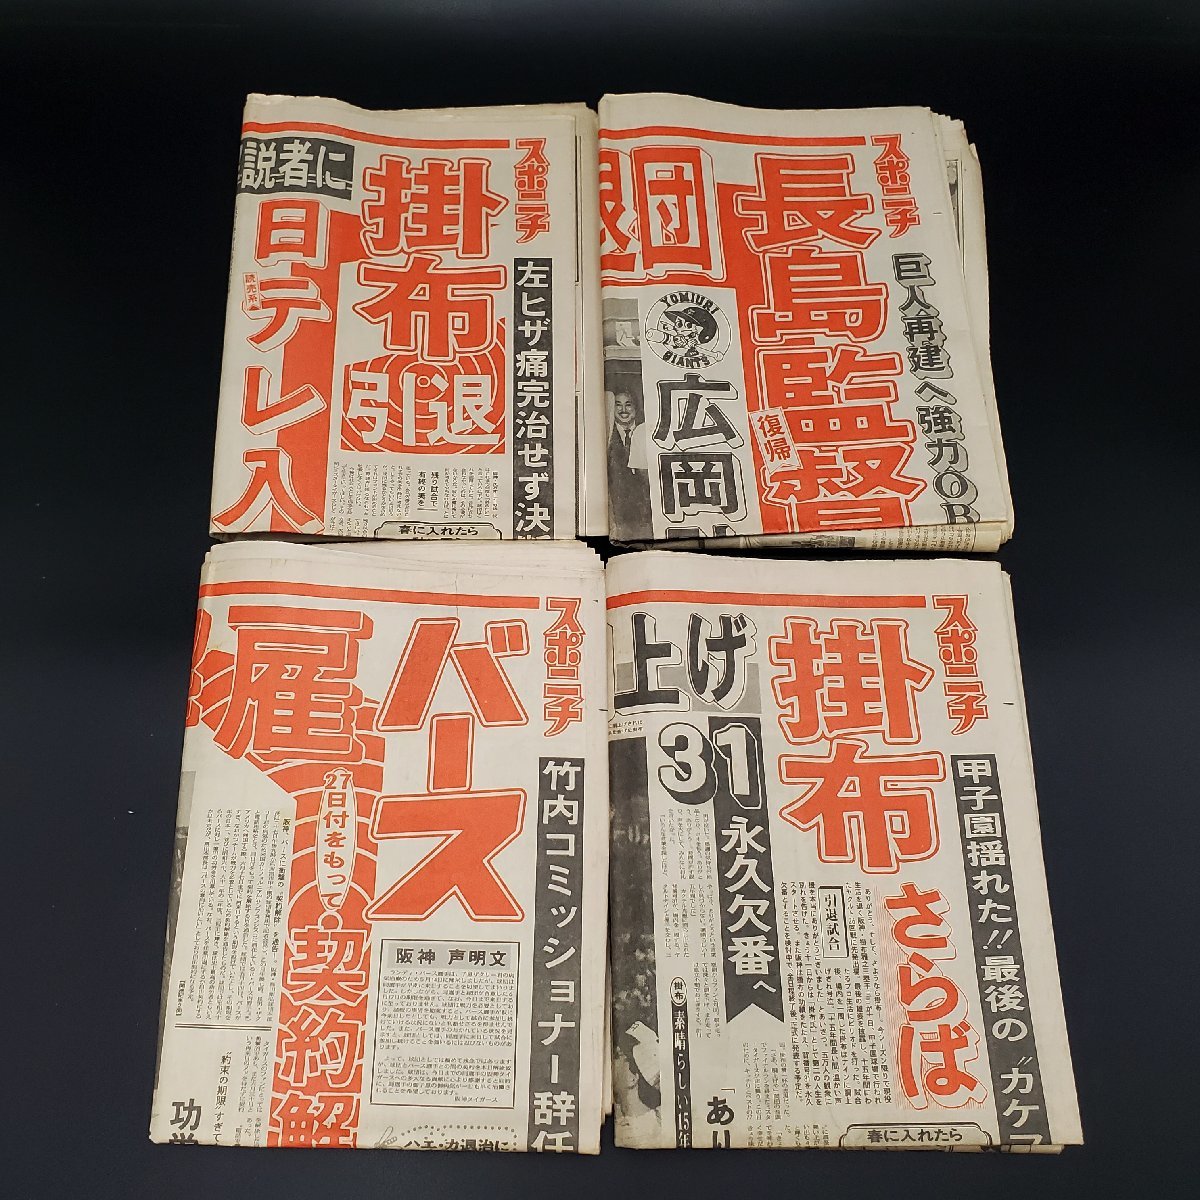 [. магазин ] старый газета Showa 60 год *63 год спорт газета 21 часть продажа комплектом бейсбол регистрация . Hanshin Tigers специальный выпуск регистрация . другой спорт Nippon средний день spo 